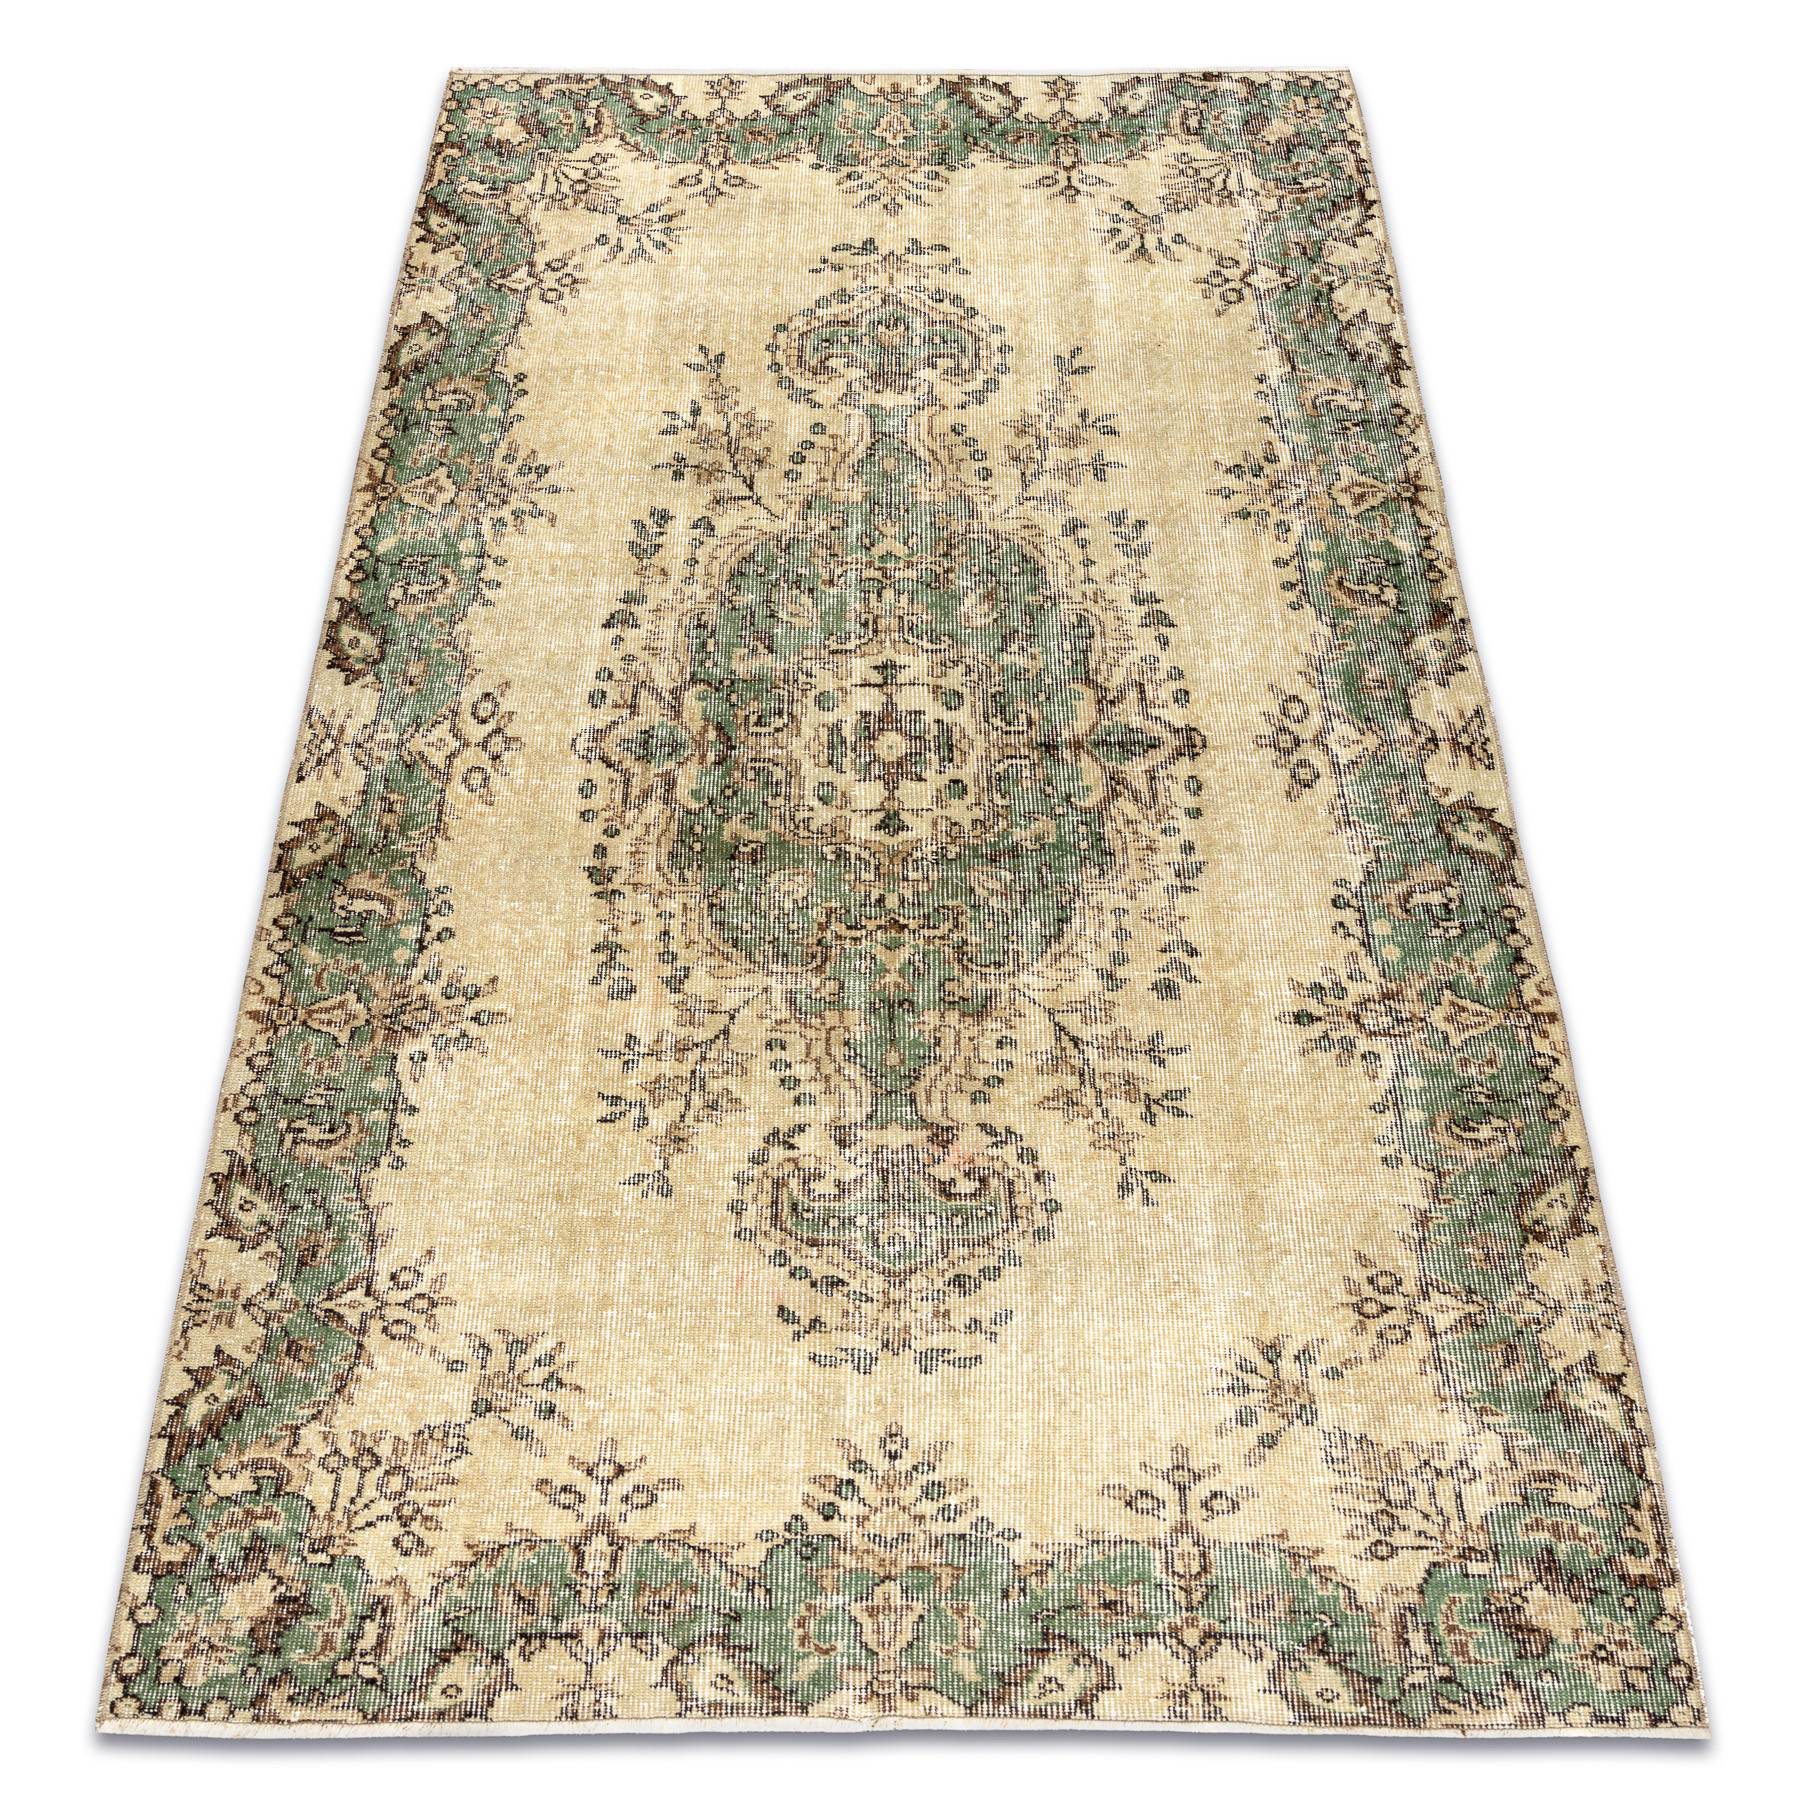 Ručne tkaný vlnený koberec Vintage 10005 ornament / kvety, béžový / zelený